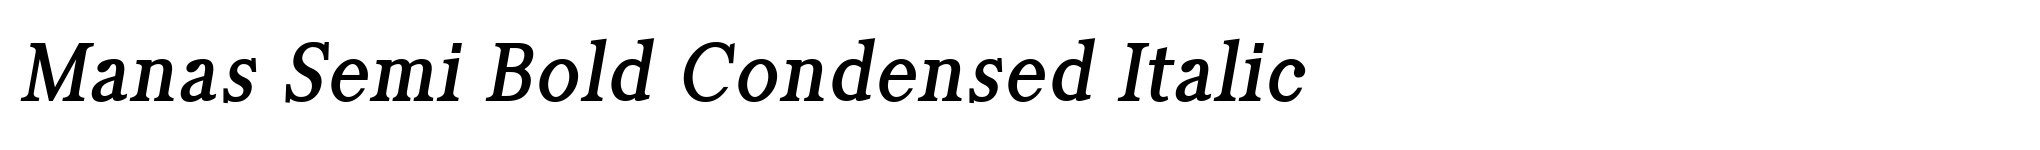 Manas Semi Bold Condensed Italic image